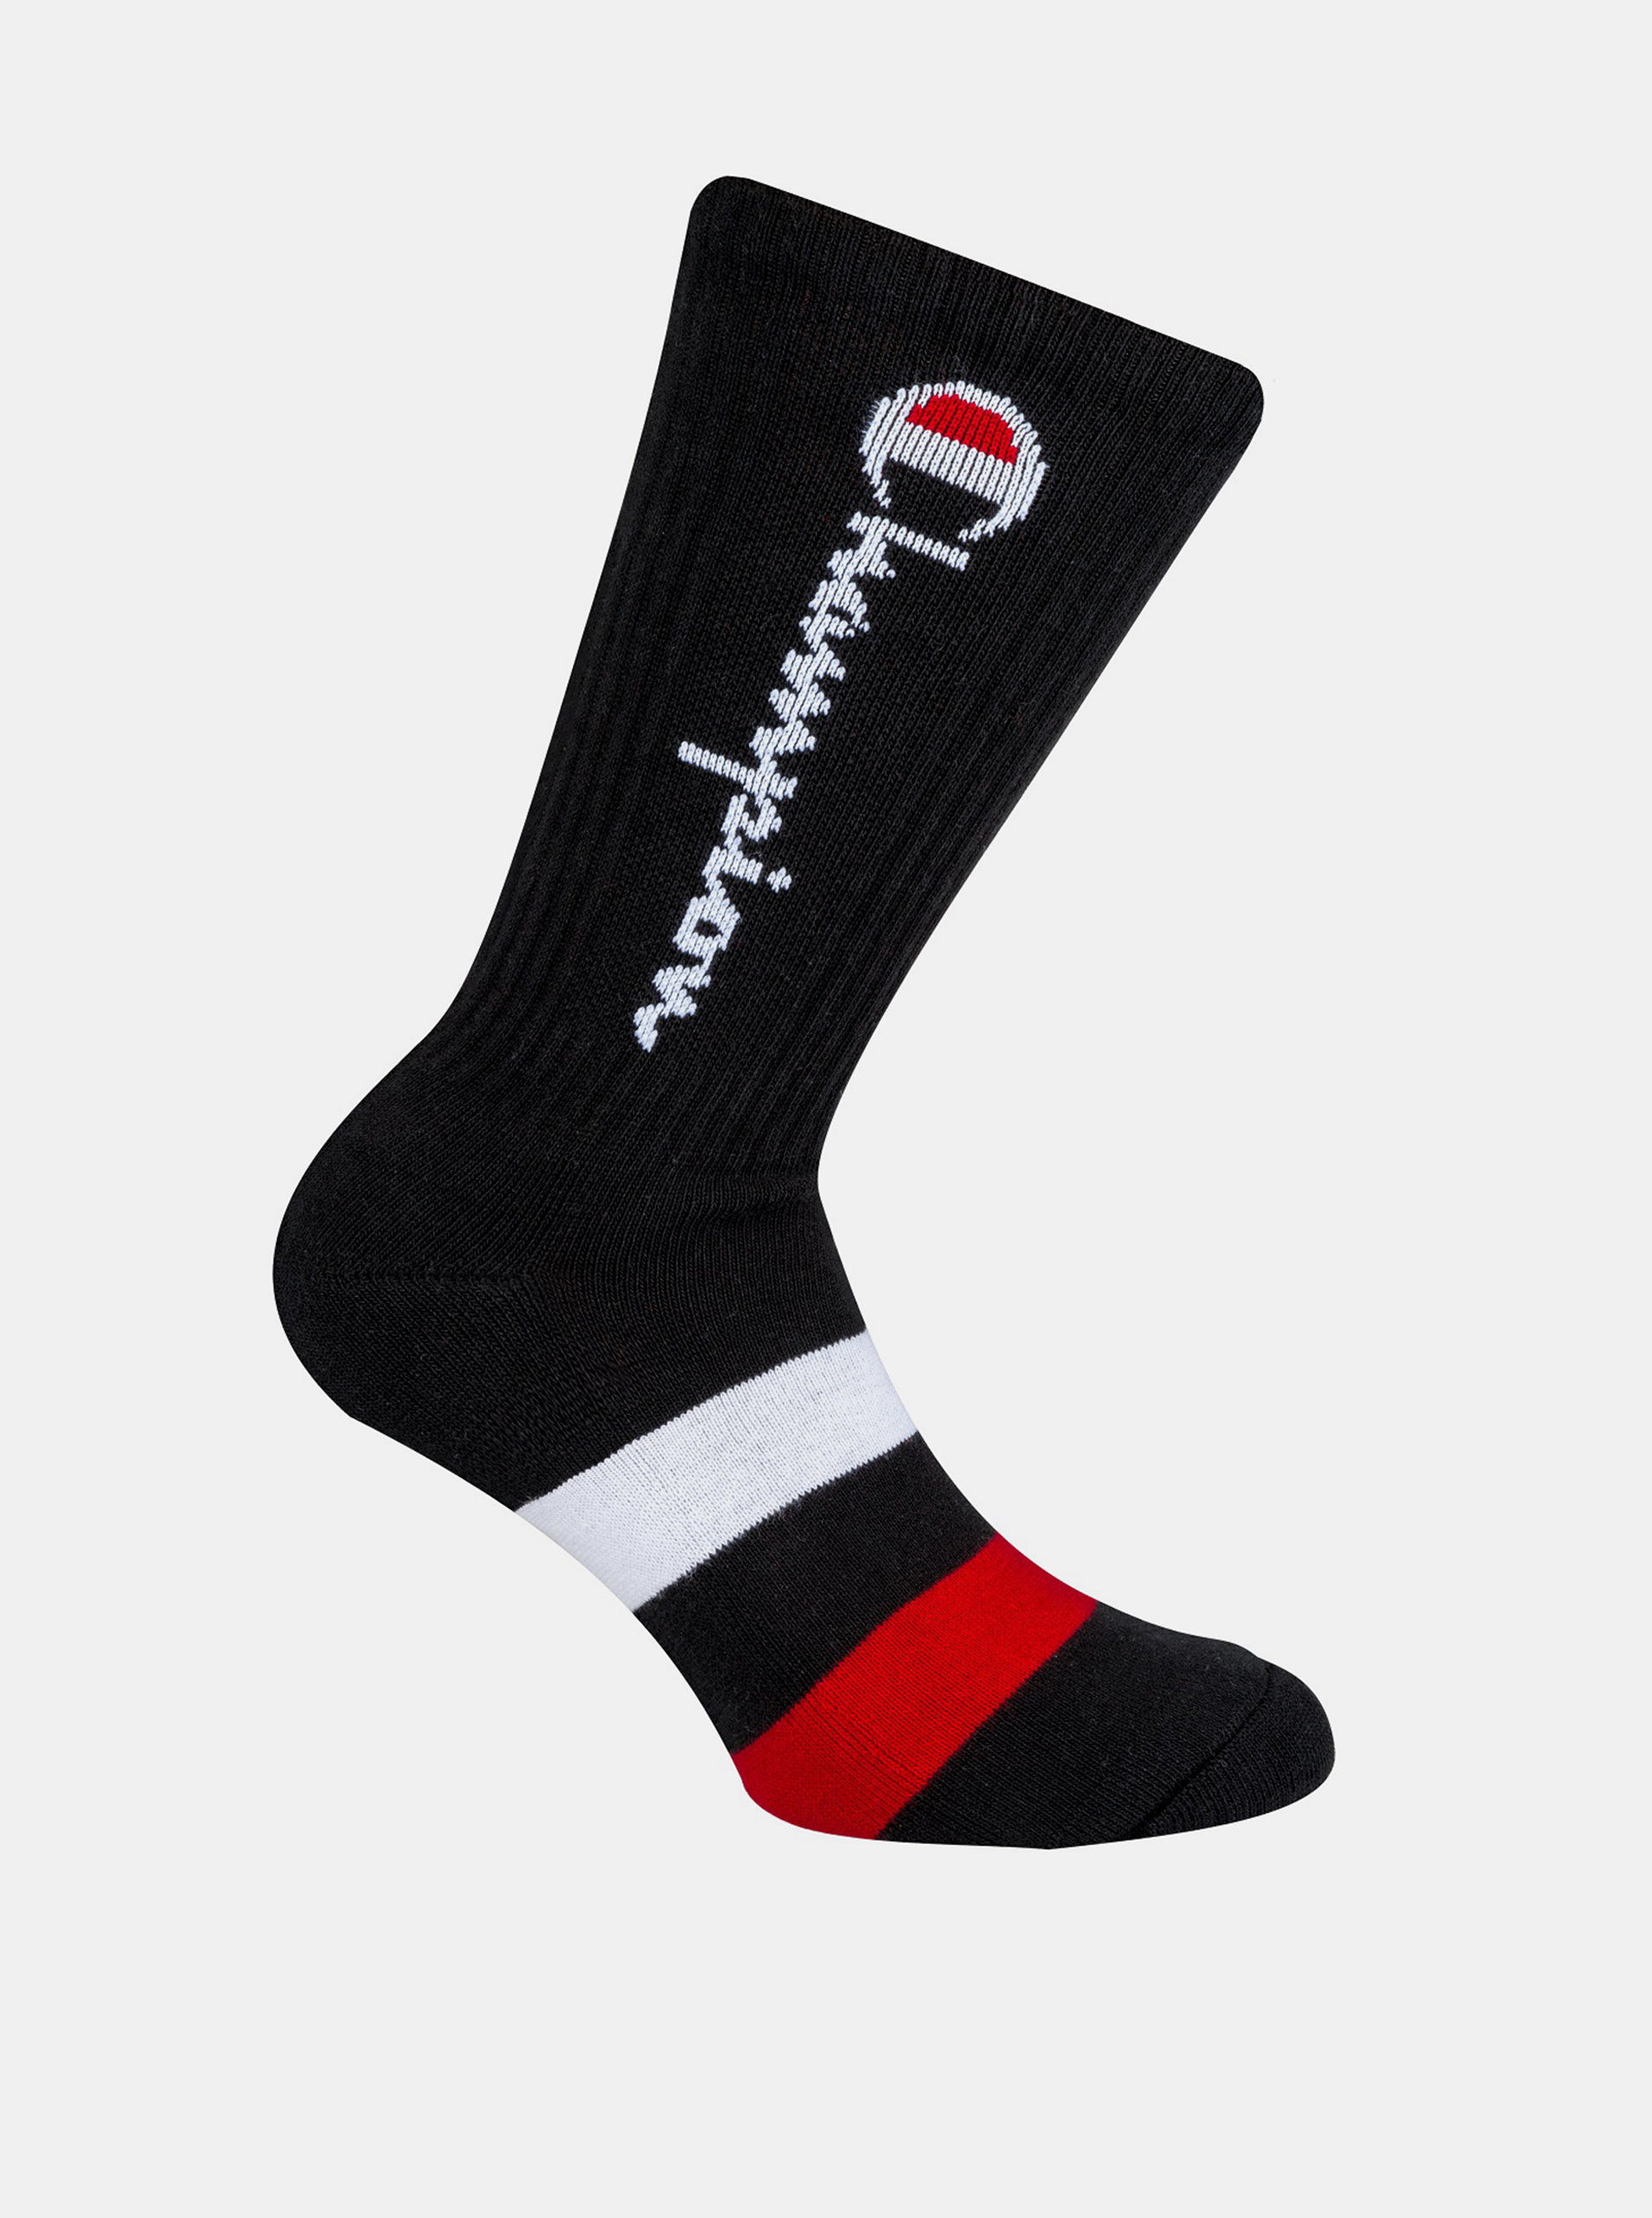 Fotografie CREW SOCKS ROCHESTER AUTHENTIC - 1 pár Champion vyšších sportovních ponožek - černá - červená - modrá